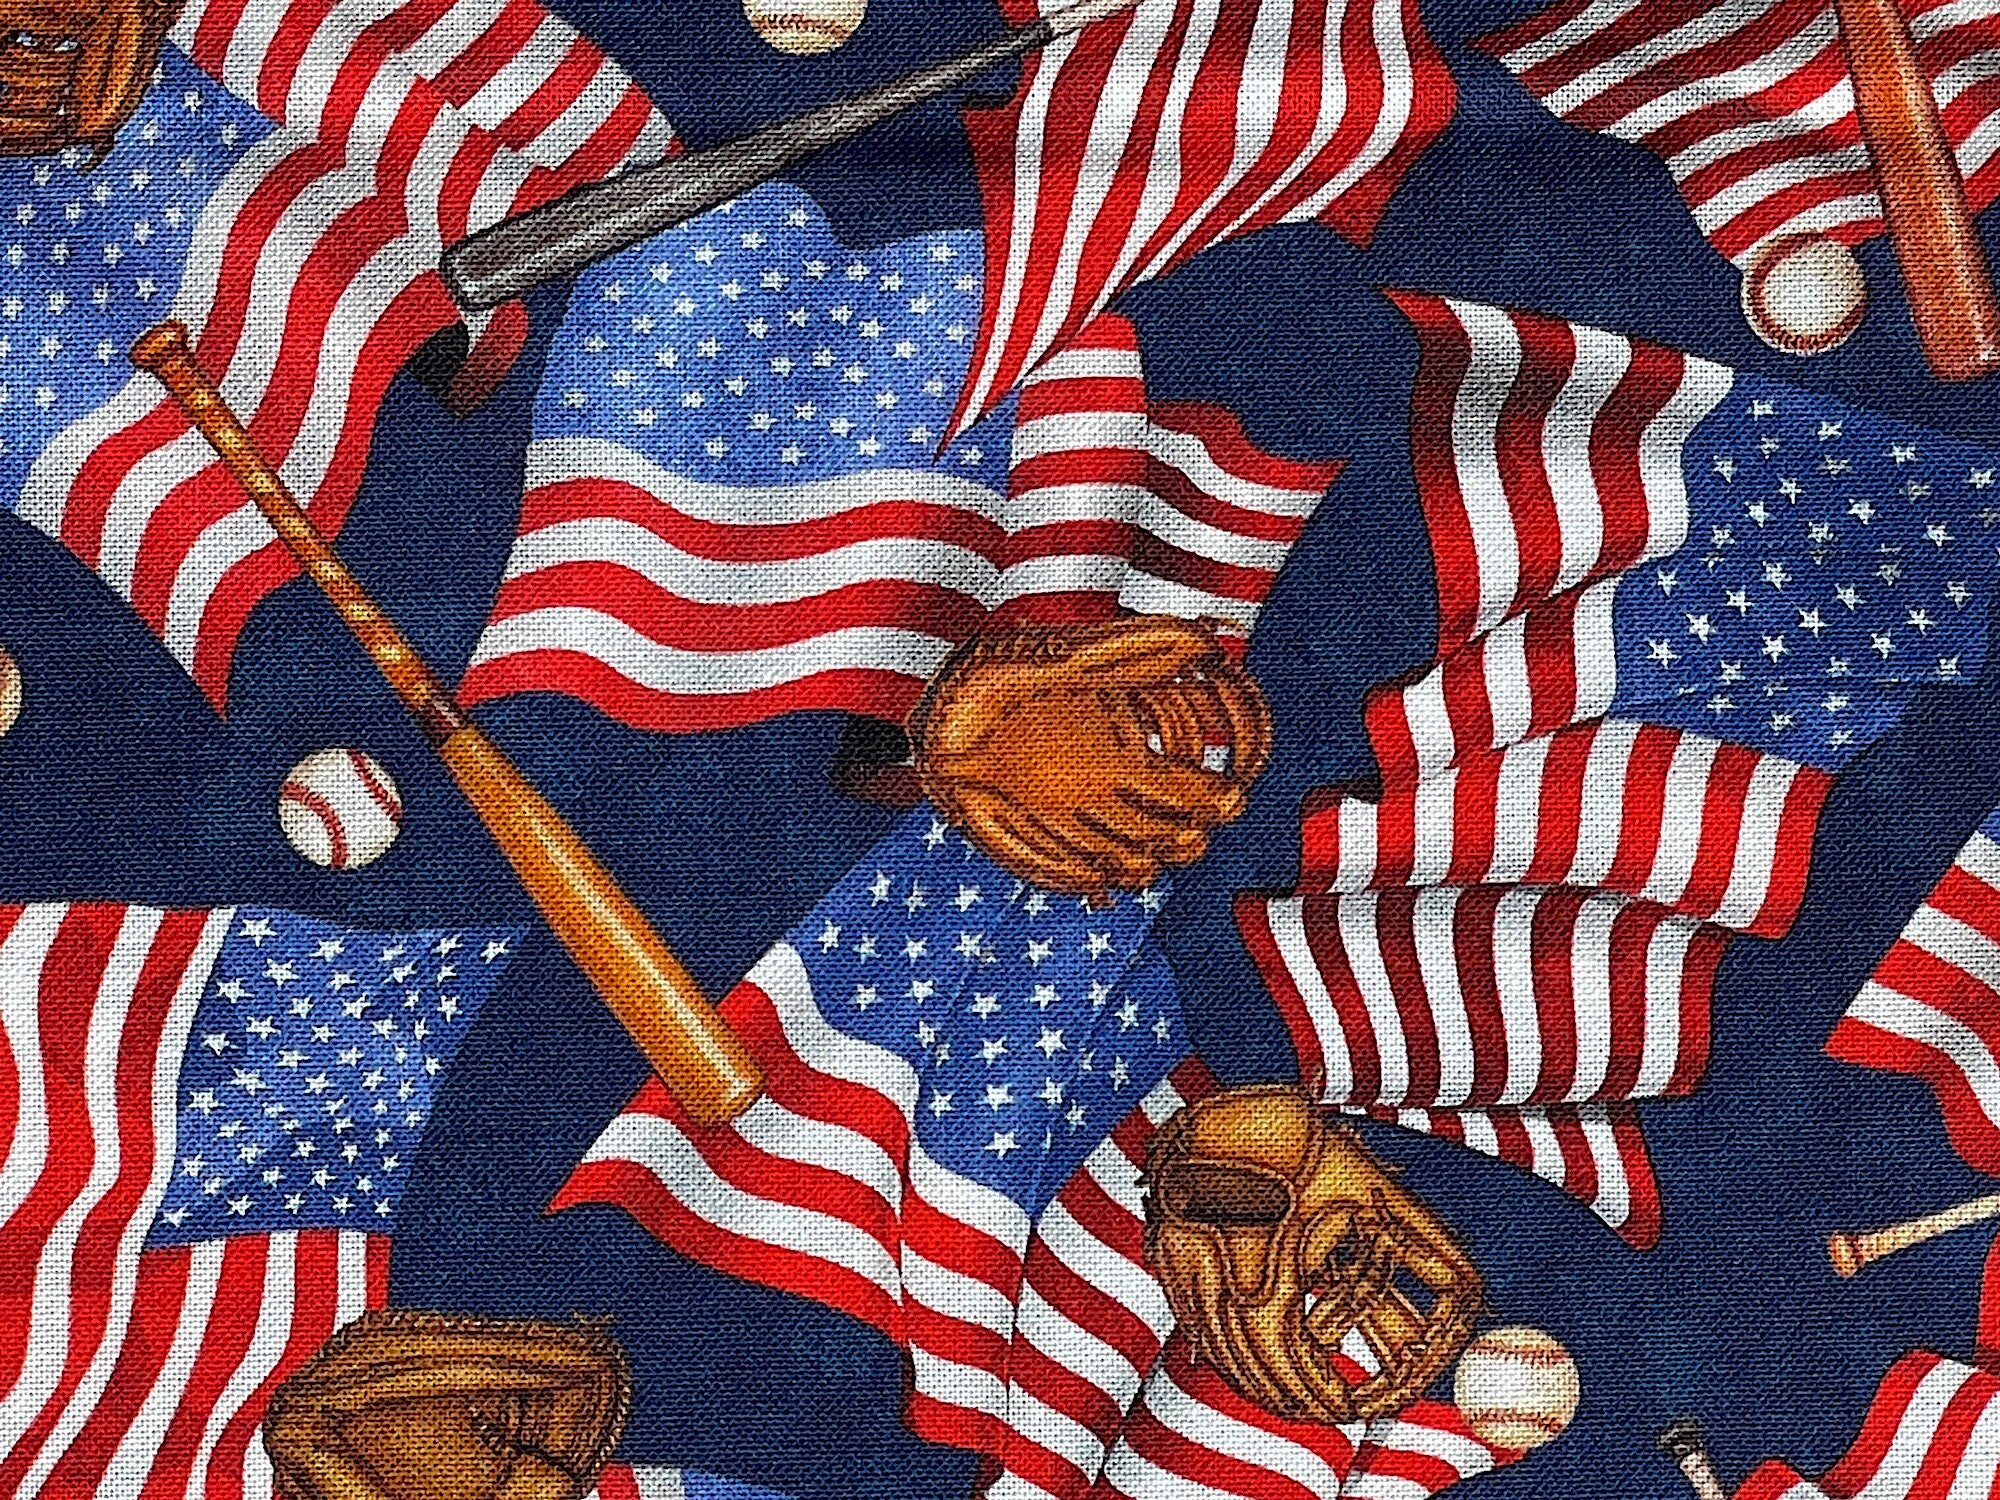 Close up of USA flags, baseball bats, balls and gloves.